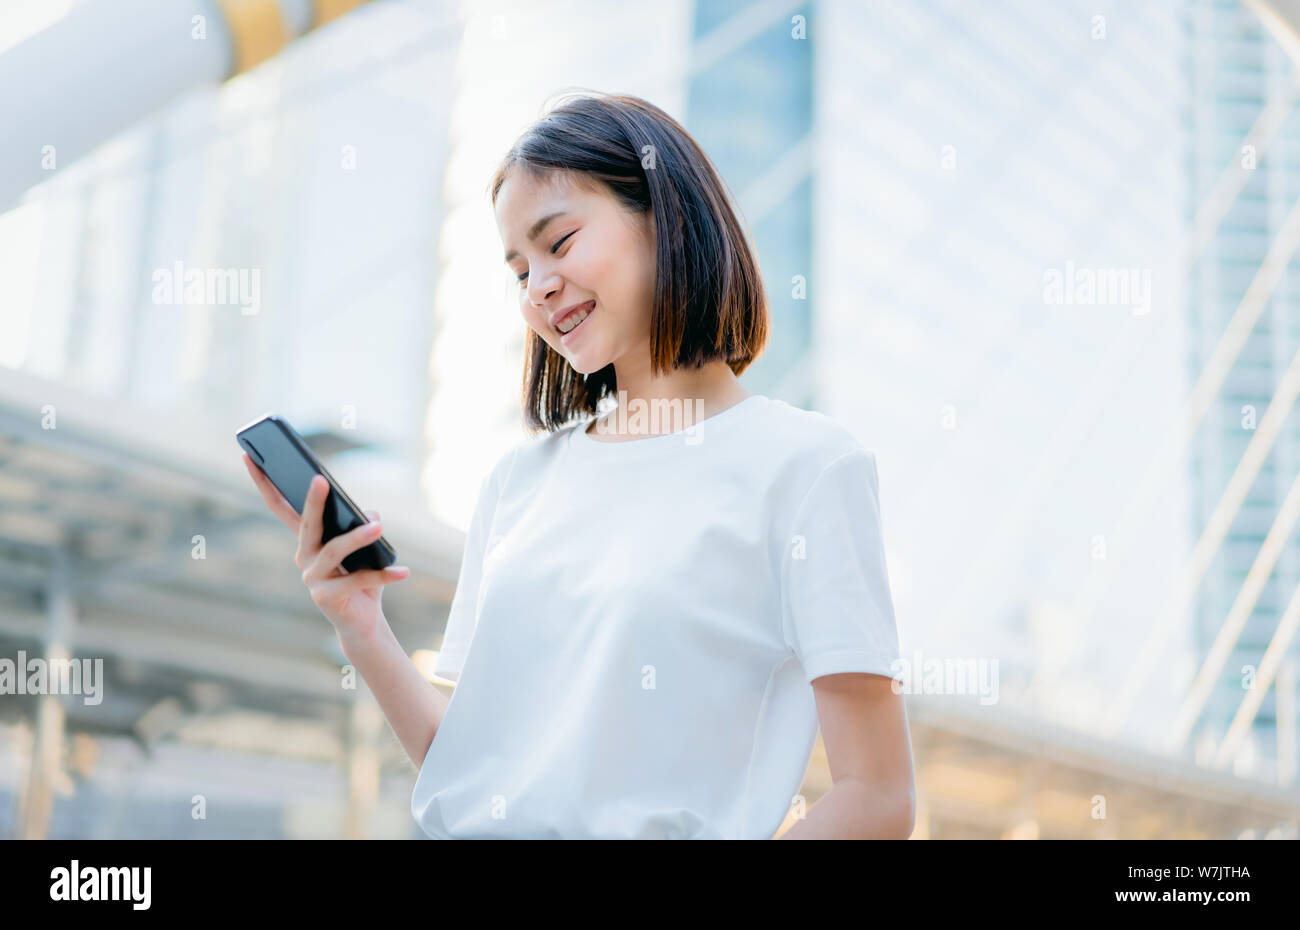 Les femmes asiatiques de happy smiling et utilisation smartphone.Le concept d'utiliser le téléphone est essentiel dans la vie quotidienne. Banque D'Images